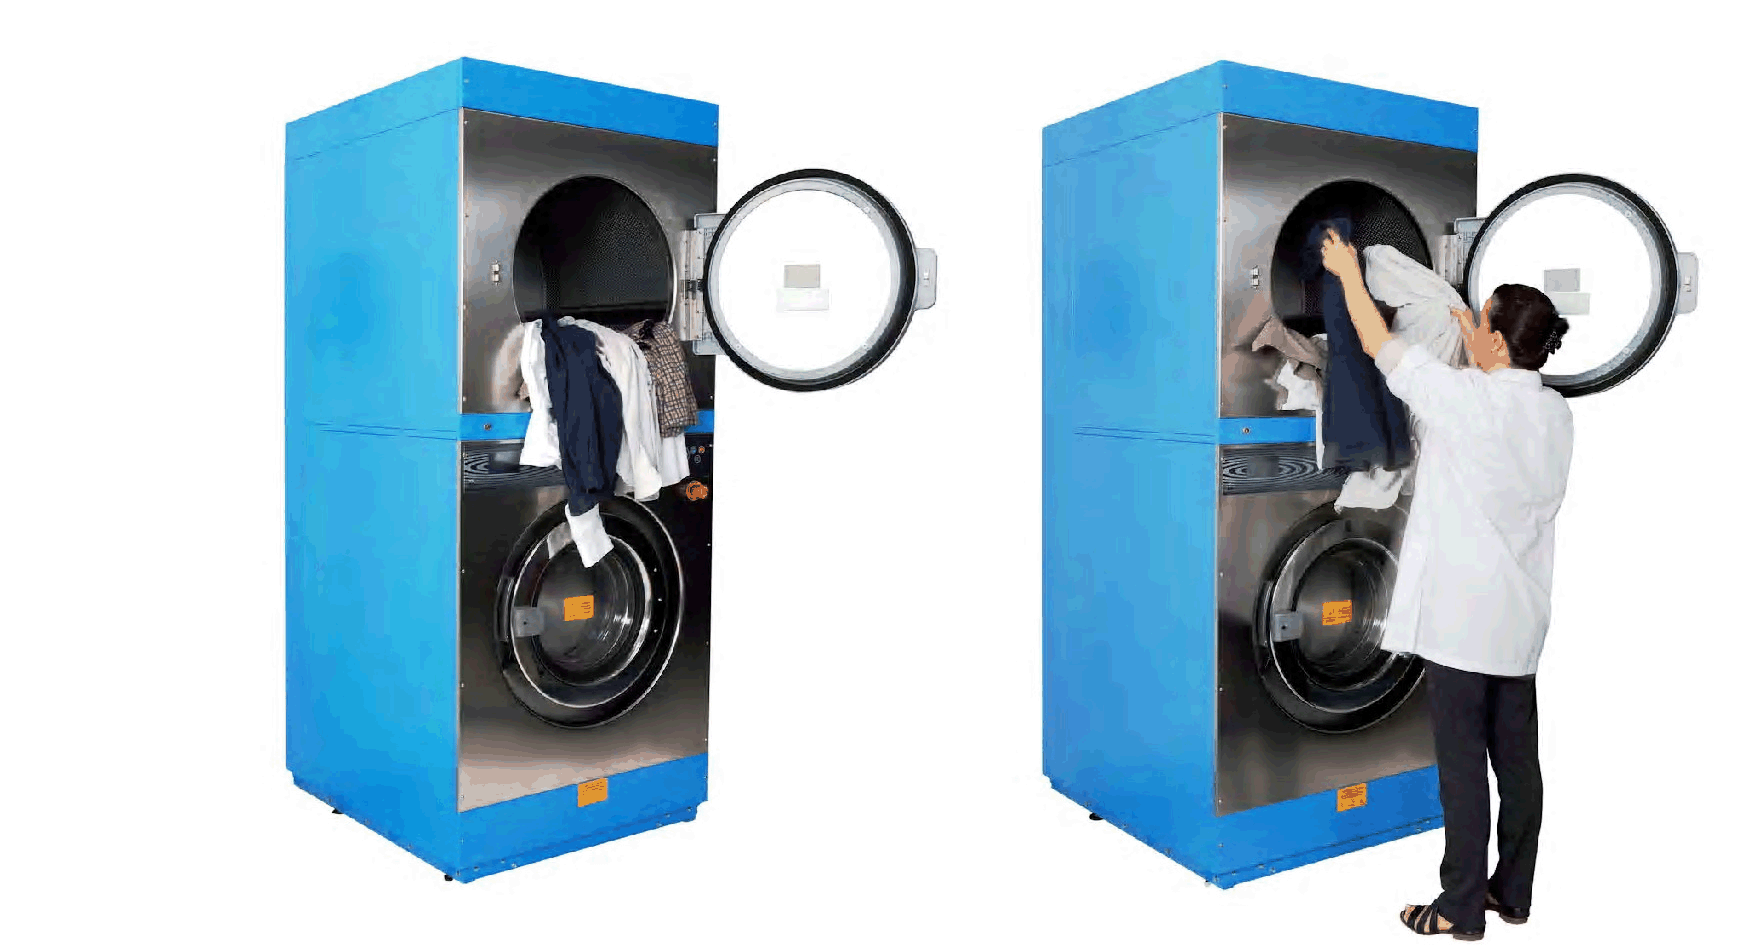 Máy giặt công nghiệp Imesa, giải pháp giặt là của sự đổi mới 0-may-giat-cong-nghiep